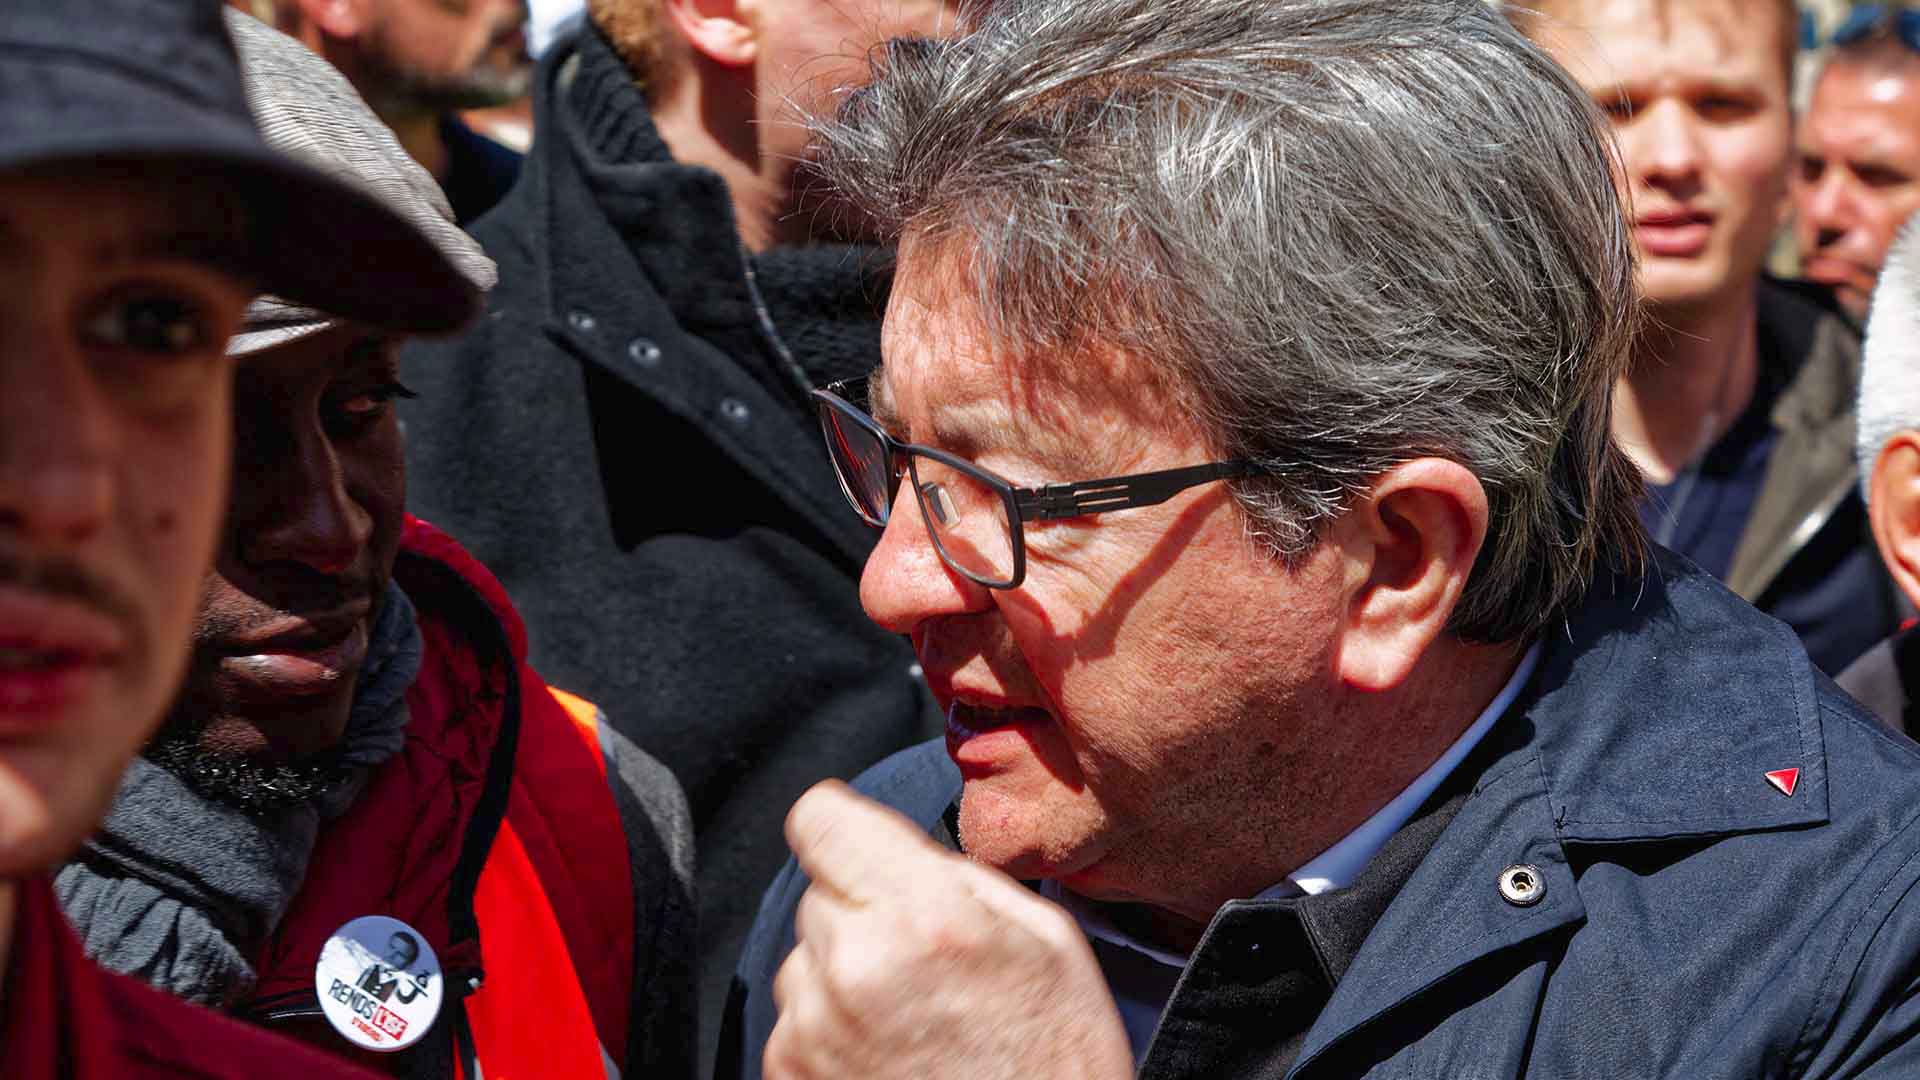 Manifestation des gilets jaunes le 27 Avril 2019, Jean-Luc Melenchon de la Fance Insoumise 